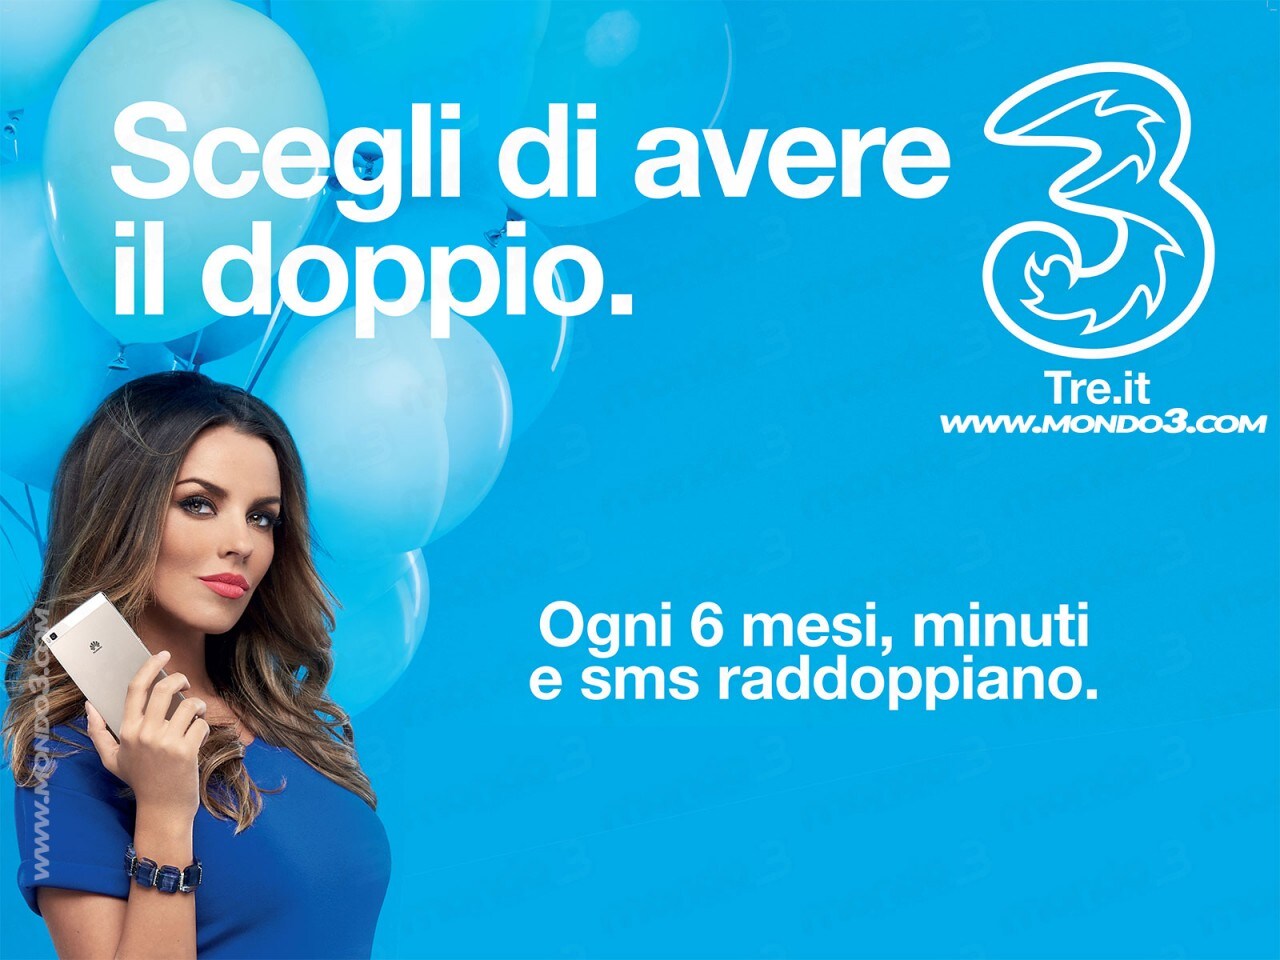 La nuova ALL-IN Extra di 3 Italia ha ben 8 GB di traffico dati a partire da 12€ al mese